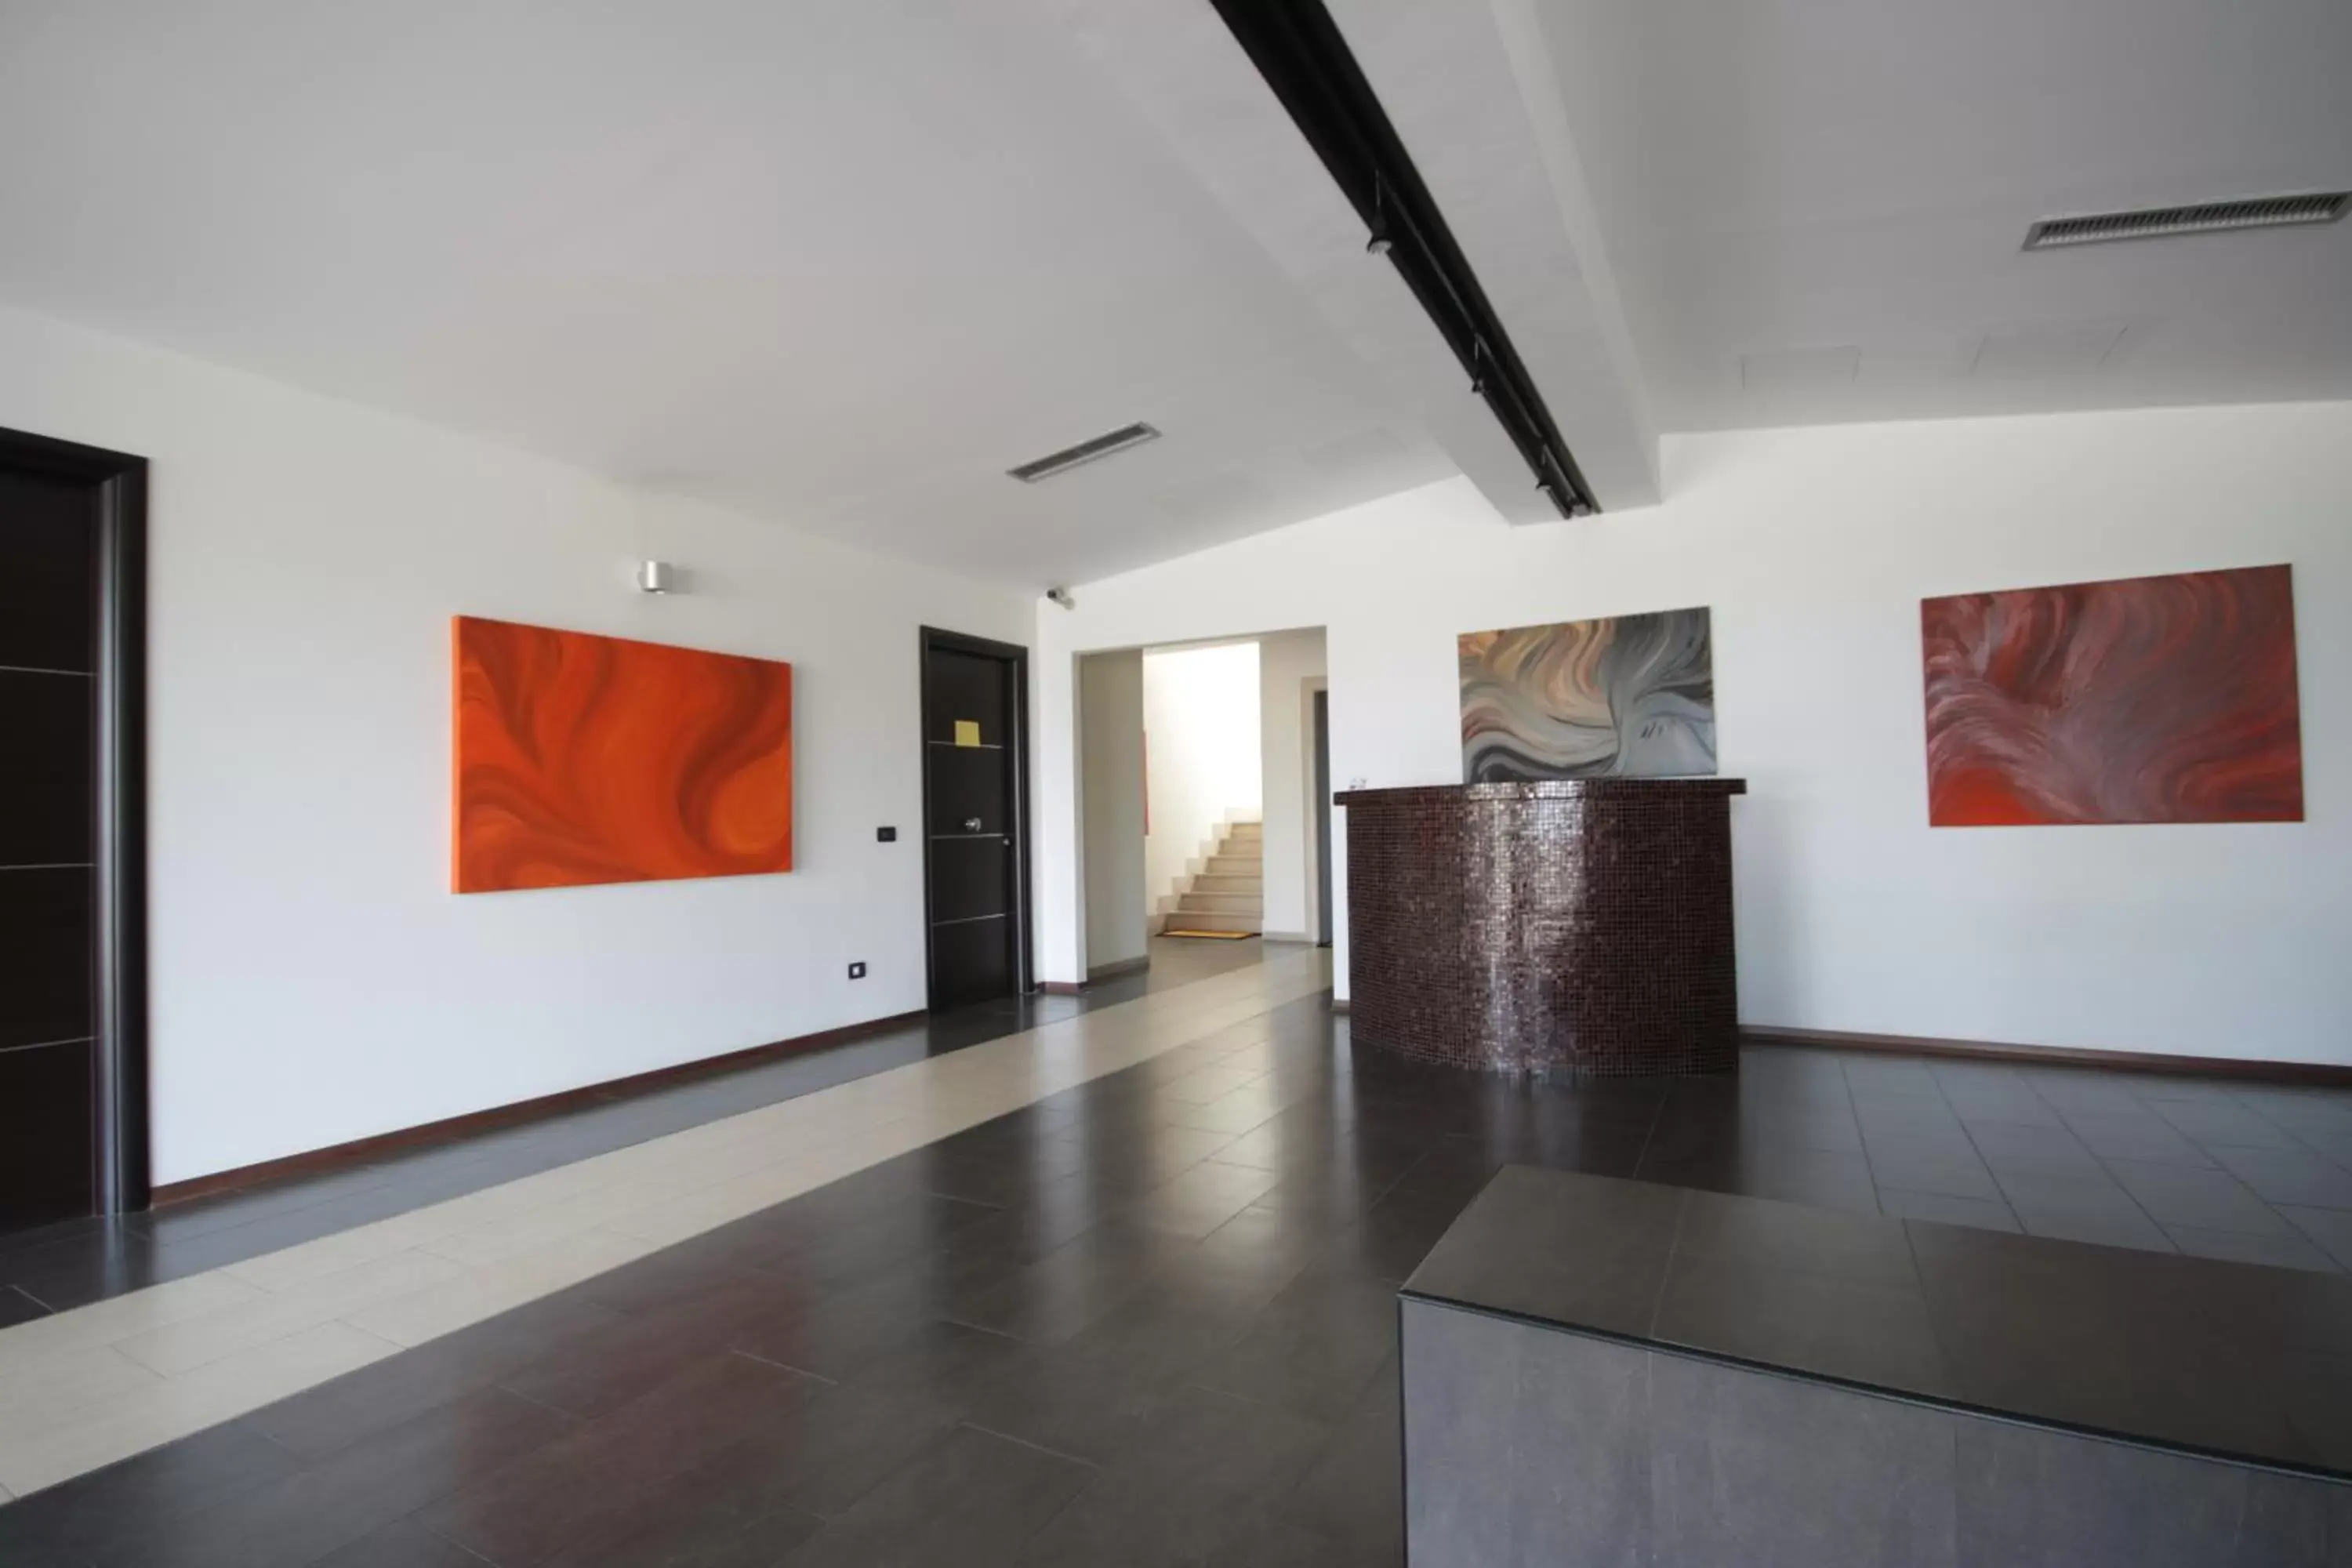 Lobby or reception, Lobby/Reception in Della Piana Residence